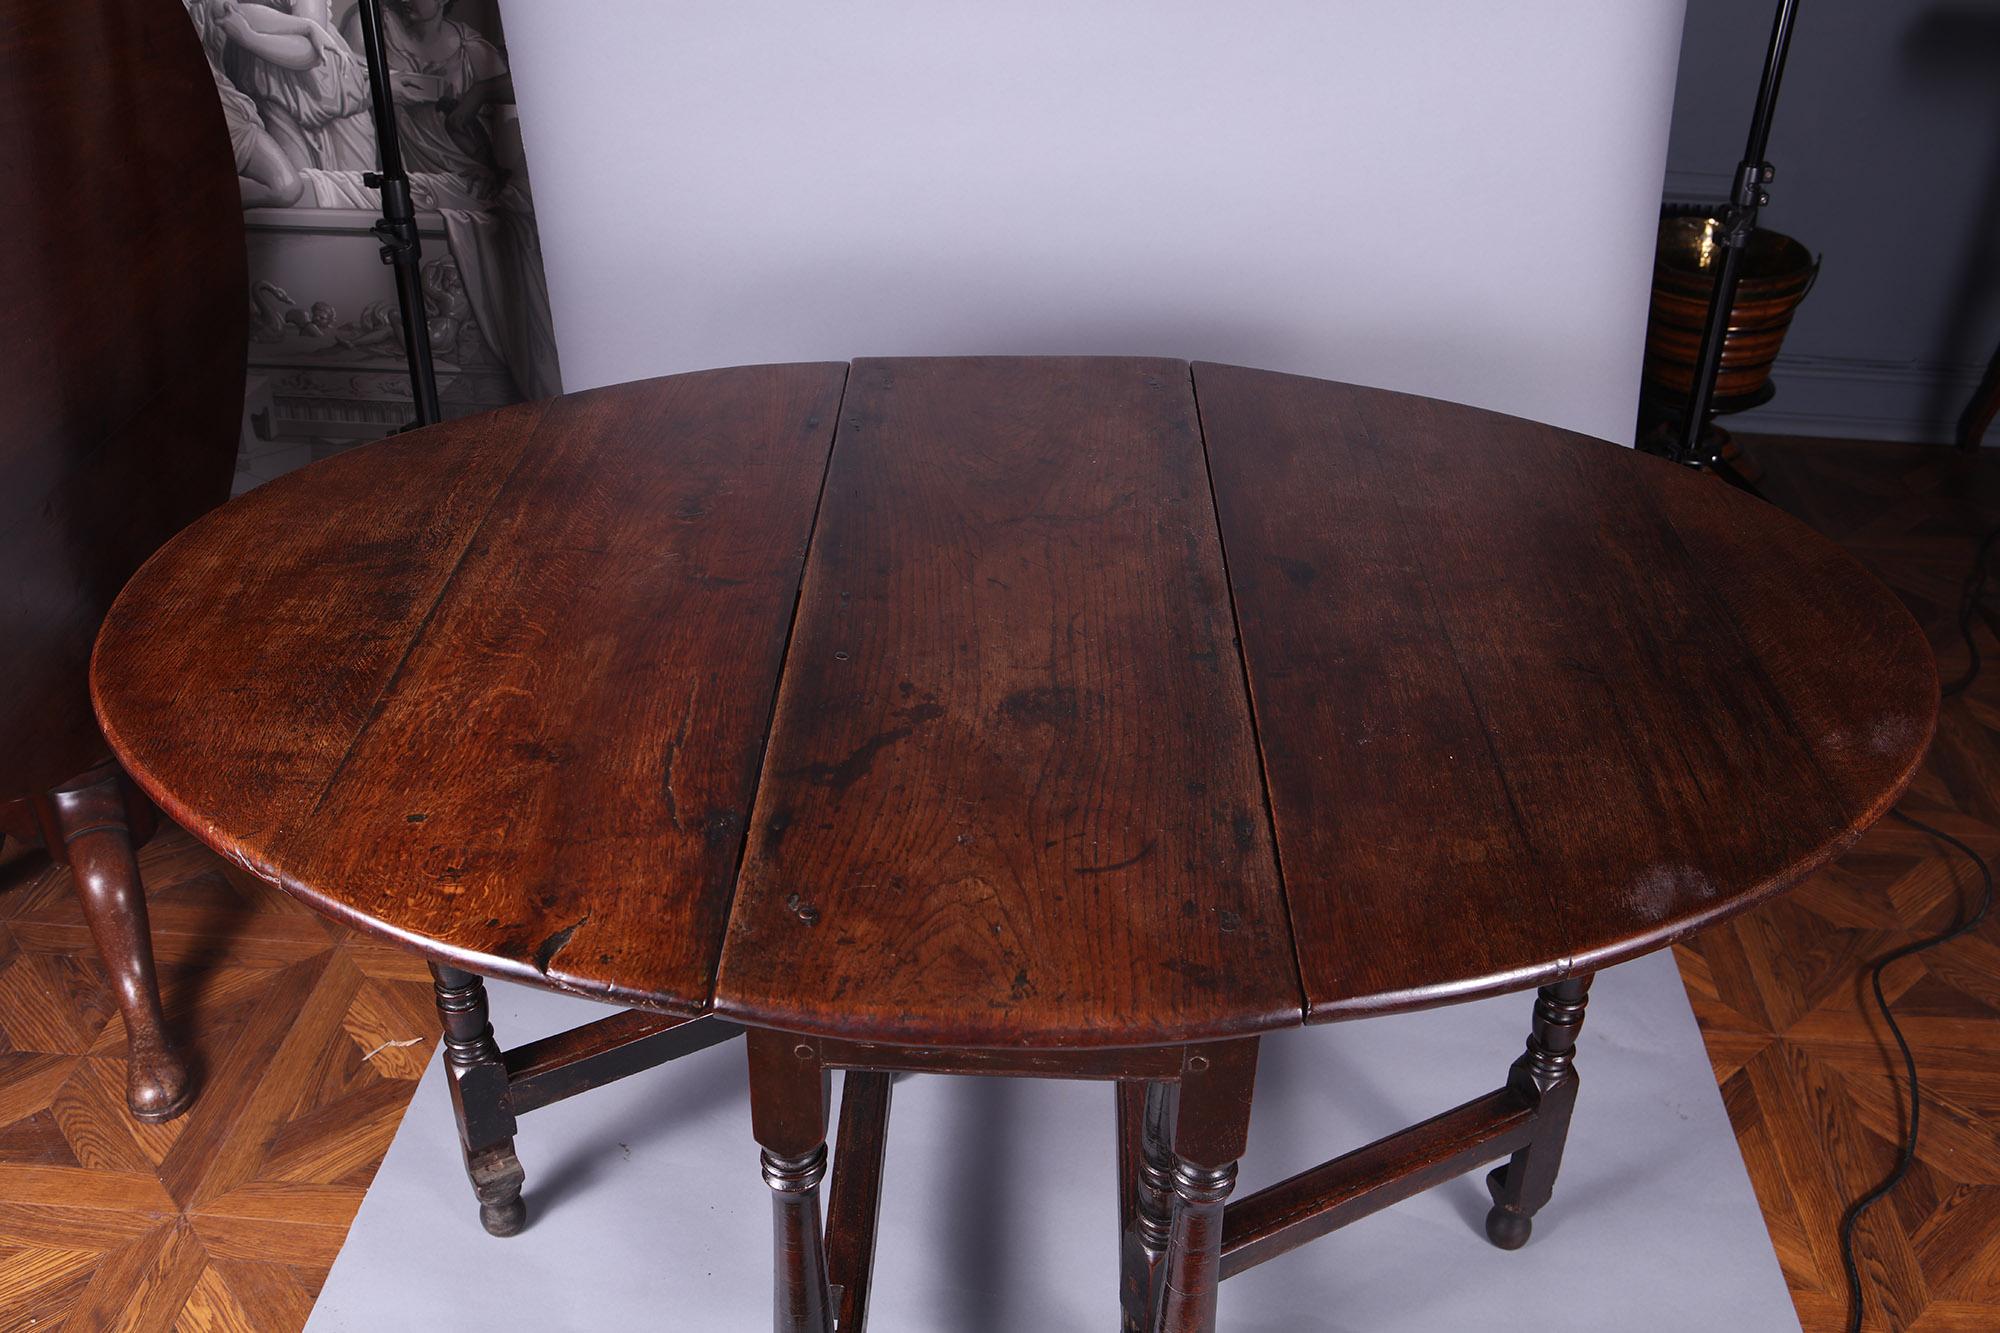 Eichenholztisch mit Fallblättern aus dem 17. Jahrhundert, mit einer zentralen Platte aus Ulme und Fallblättern aus Eiche, die auf gedrechselten Beinen mit Streckern stehen.